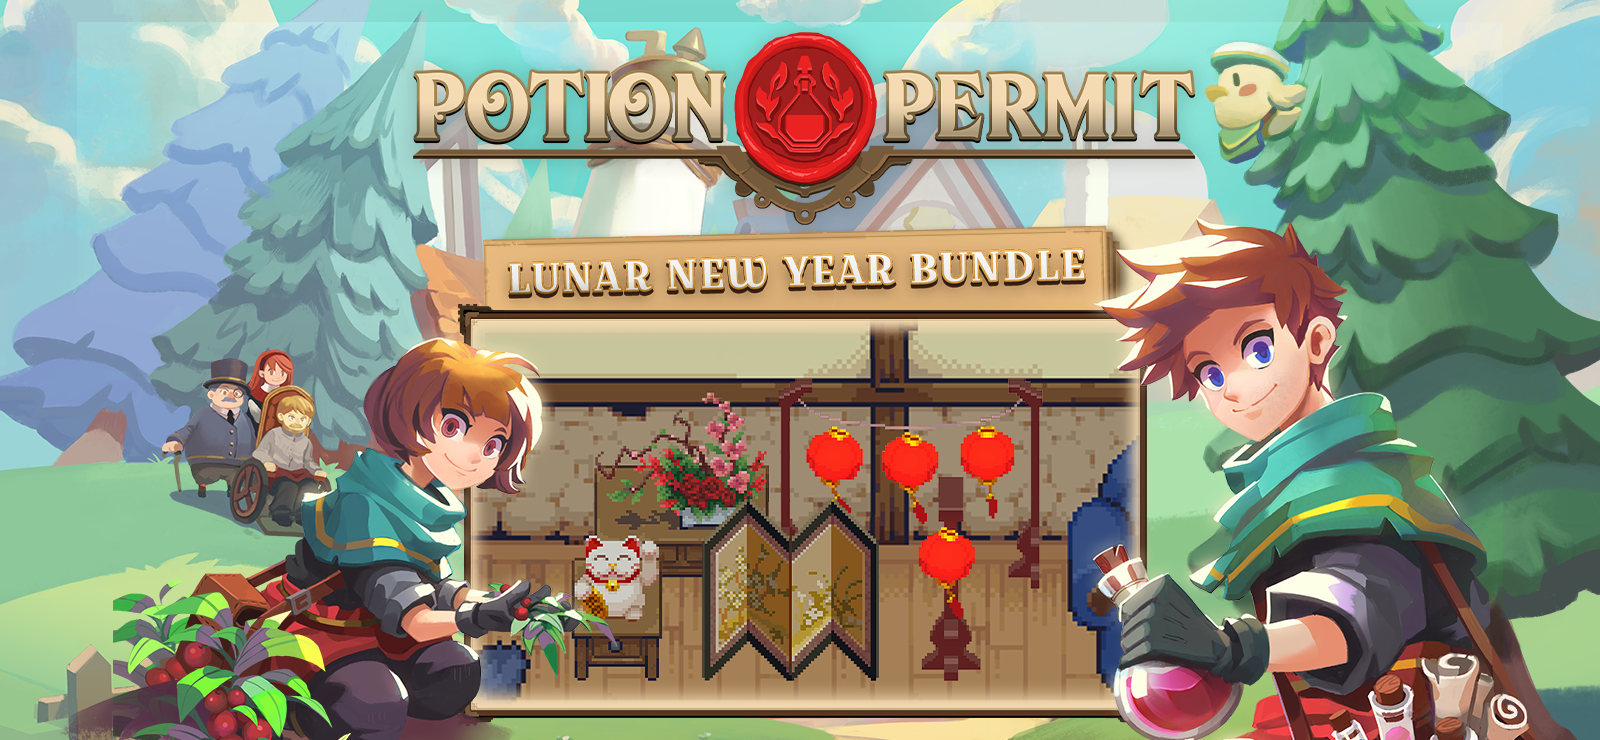 Potion Permit - Lunar New Year Bundle